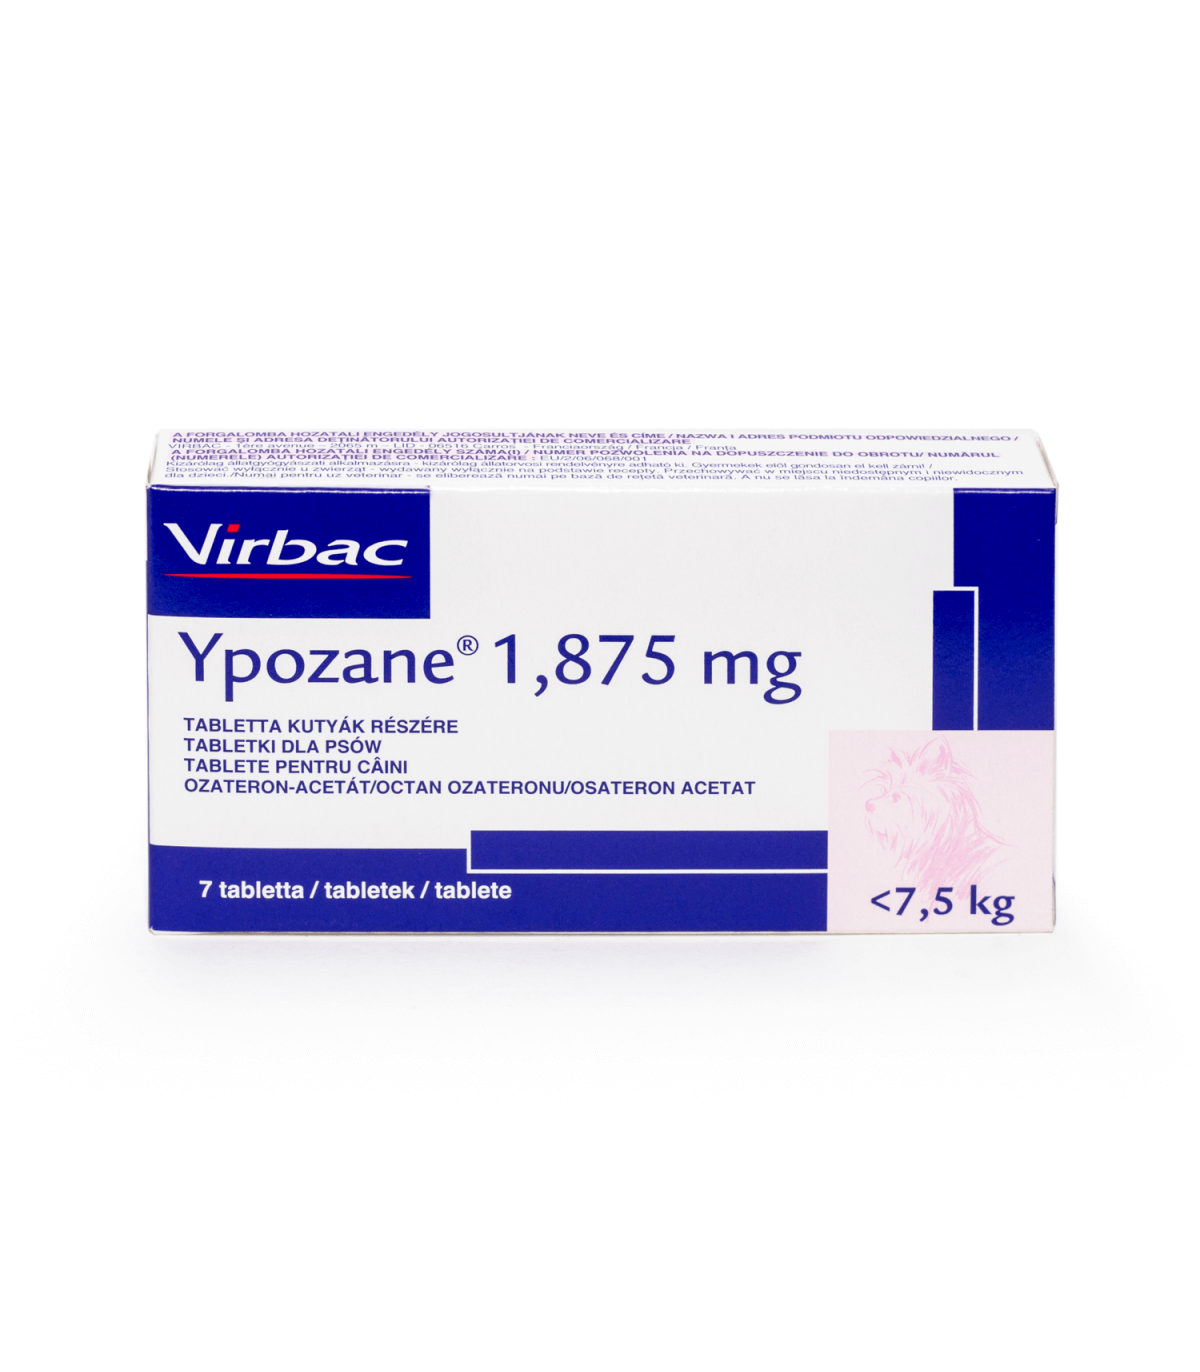 Ypozane 1.875 mg, (caini <7.5 kg) 7 tablete petmart.ro imagine 2022